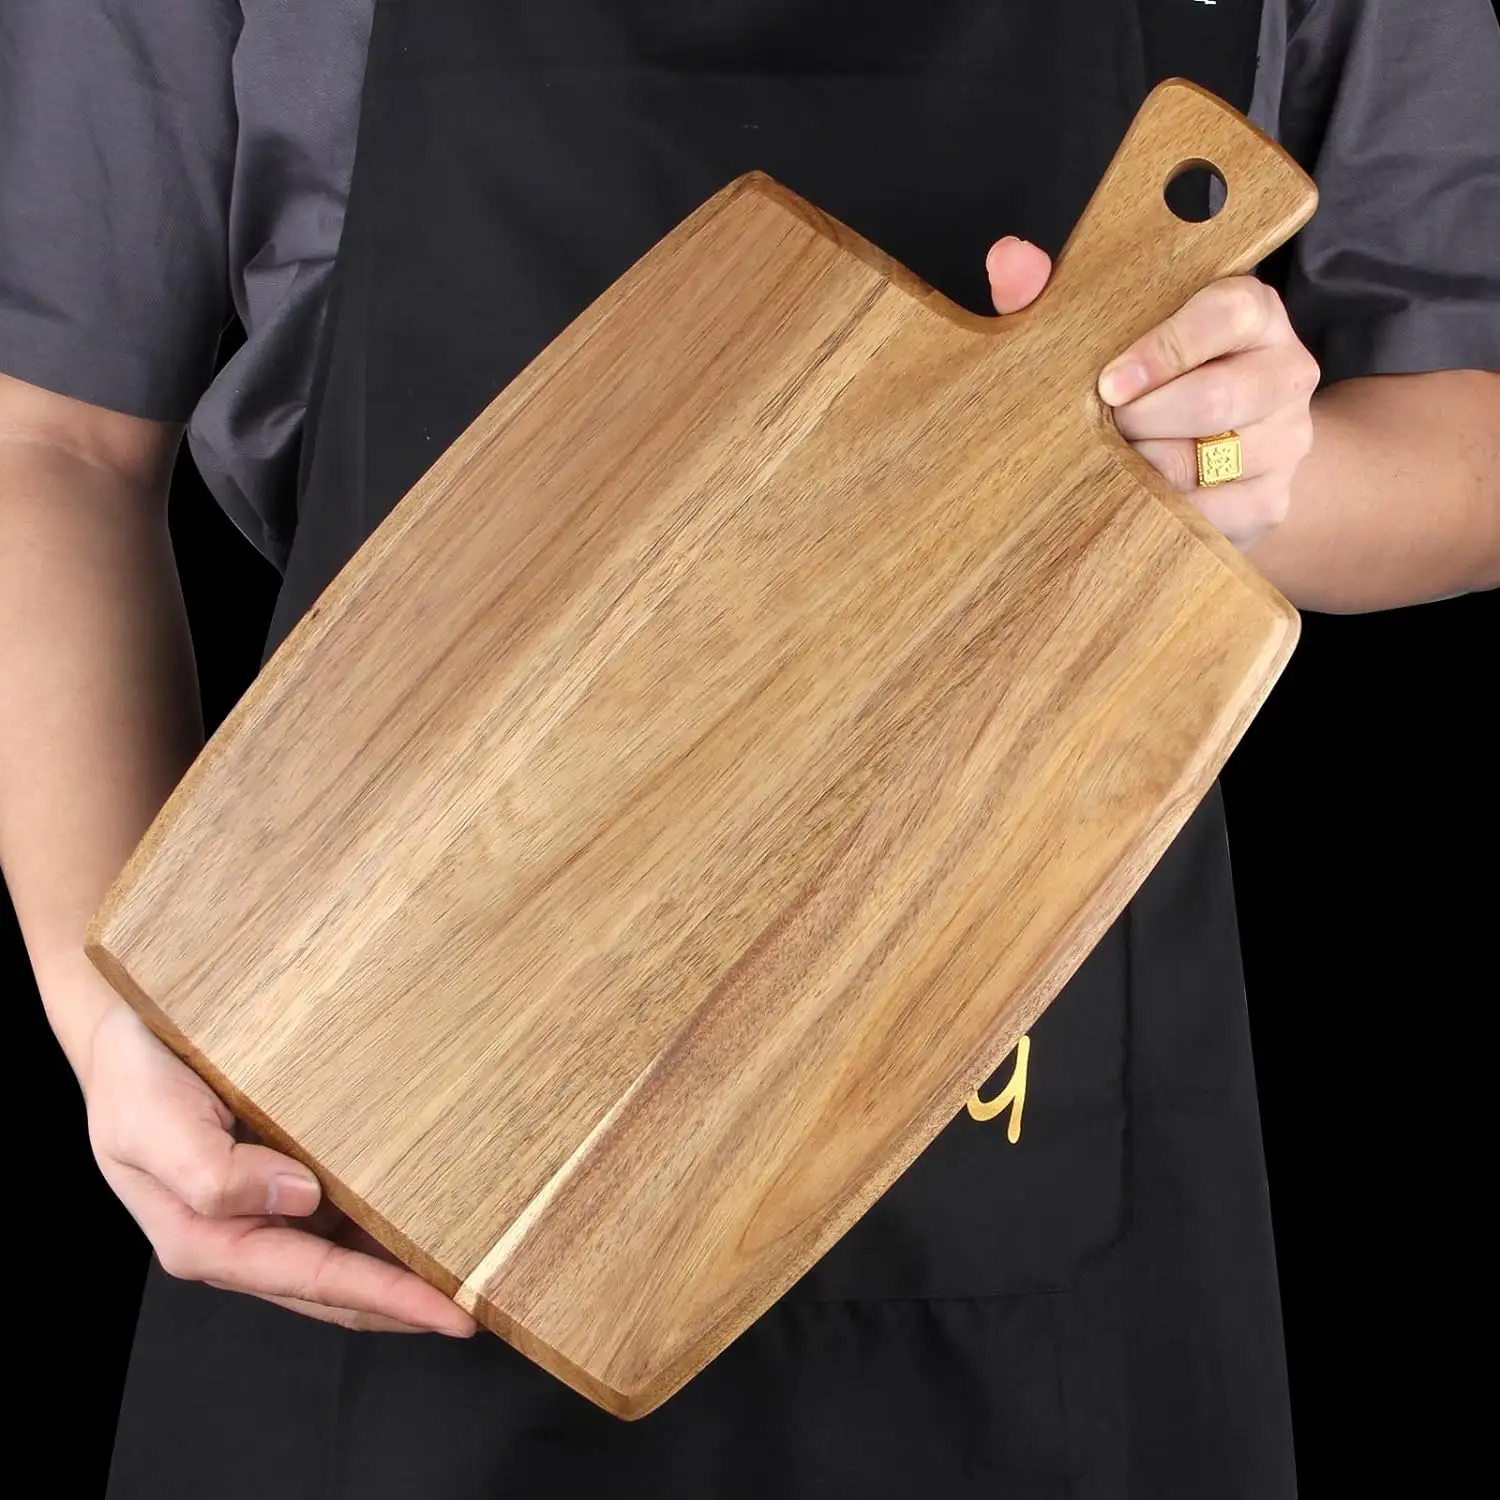 Vietnam doğal toksik olmayan kesme tahtası mutfak eşyaları yapılan sıcak tasarım ahşap kesme tahtası